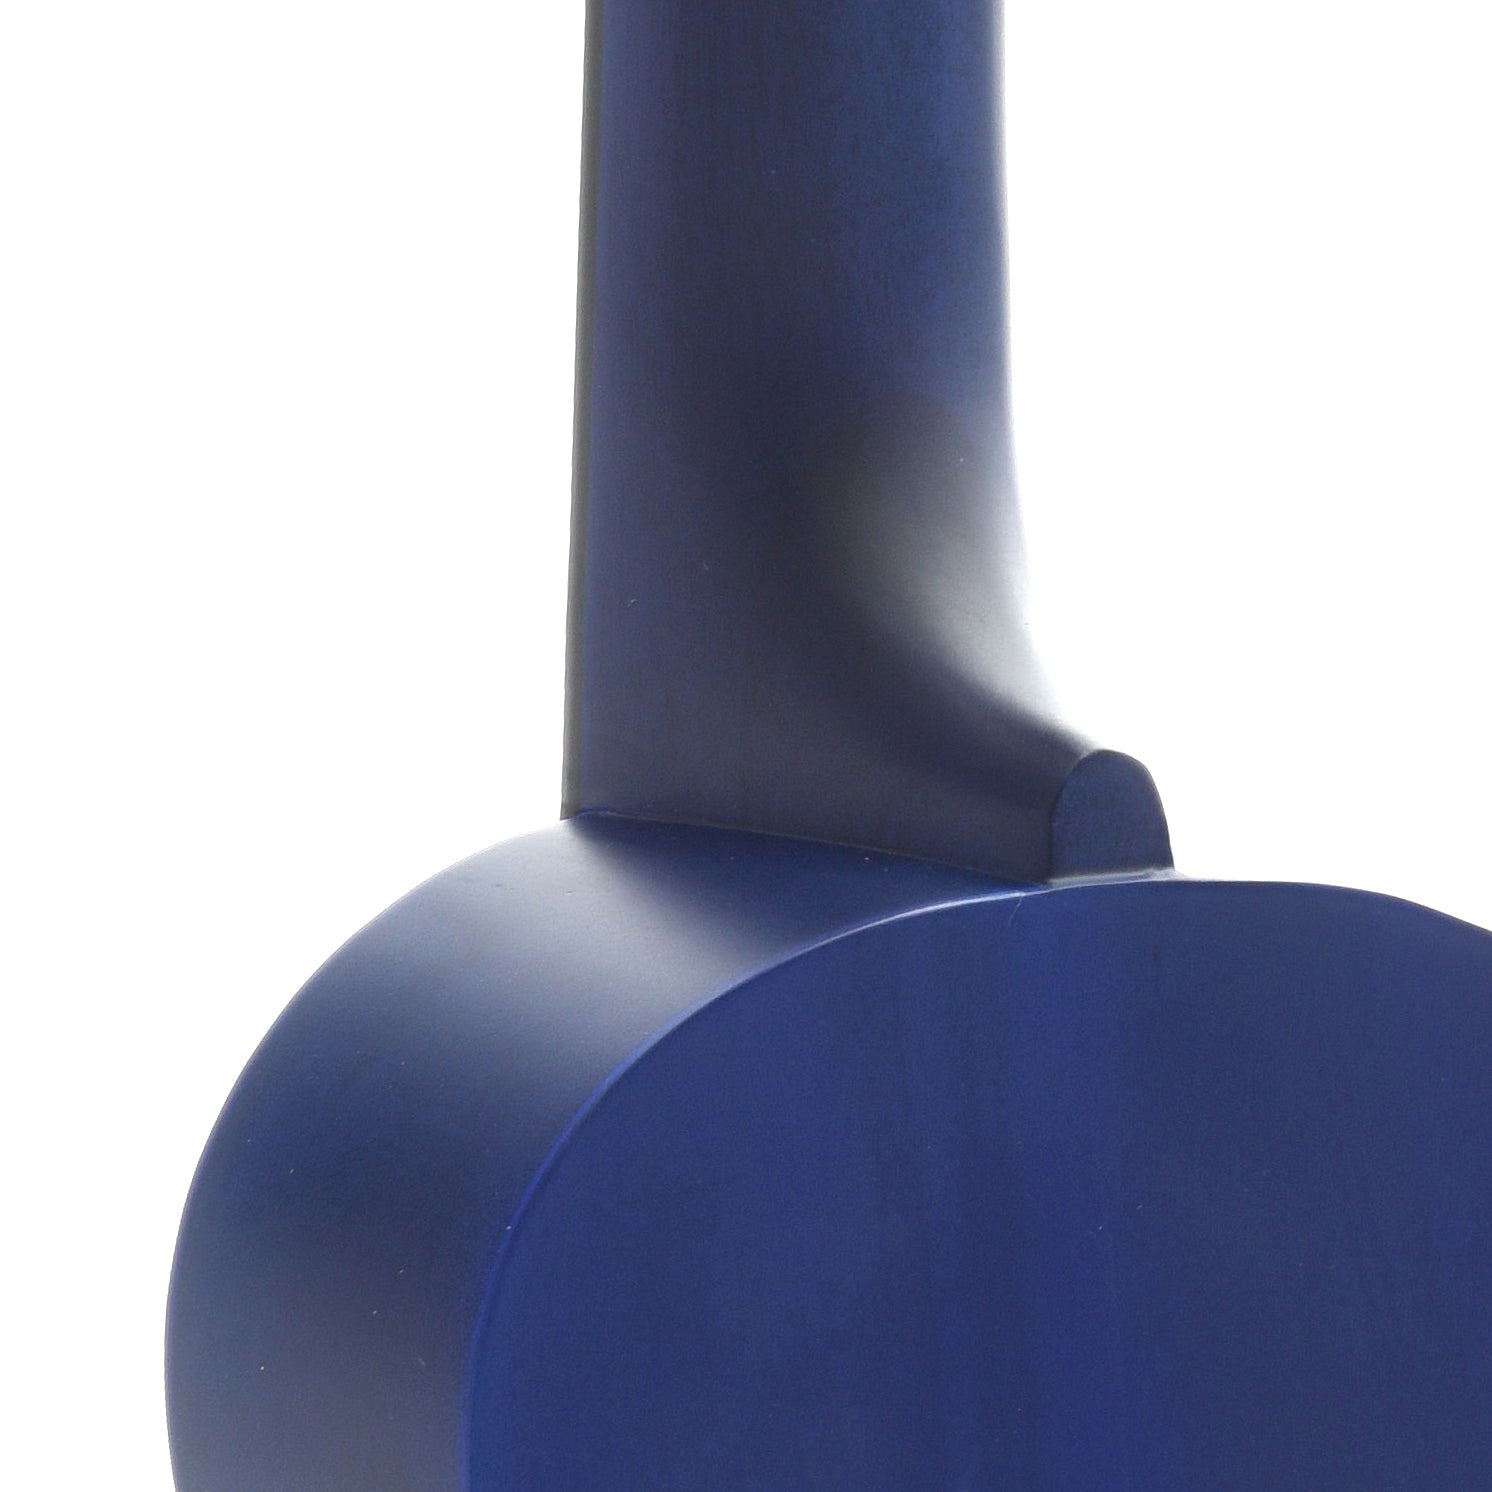 Neck Joint of Ohana SK-10 Soprano Ukulele, Blue